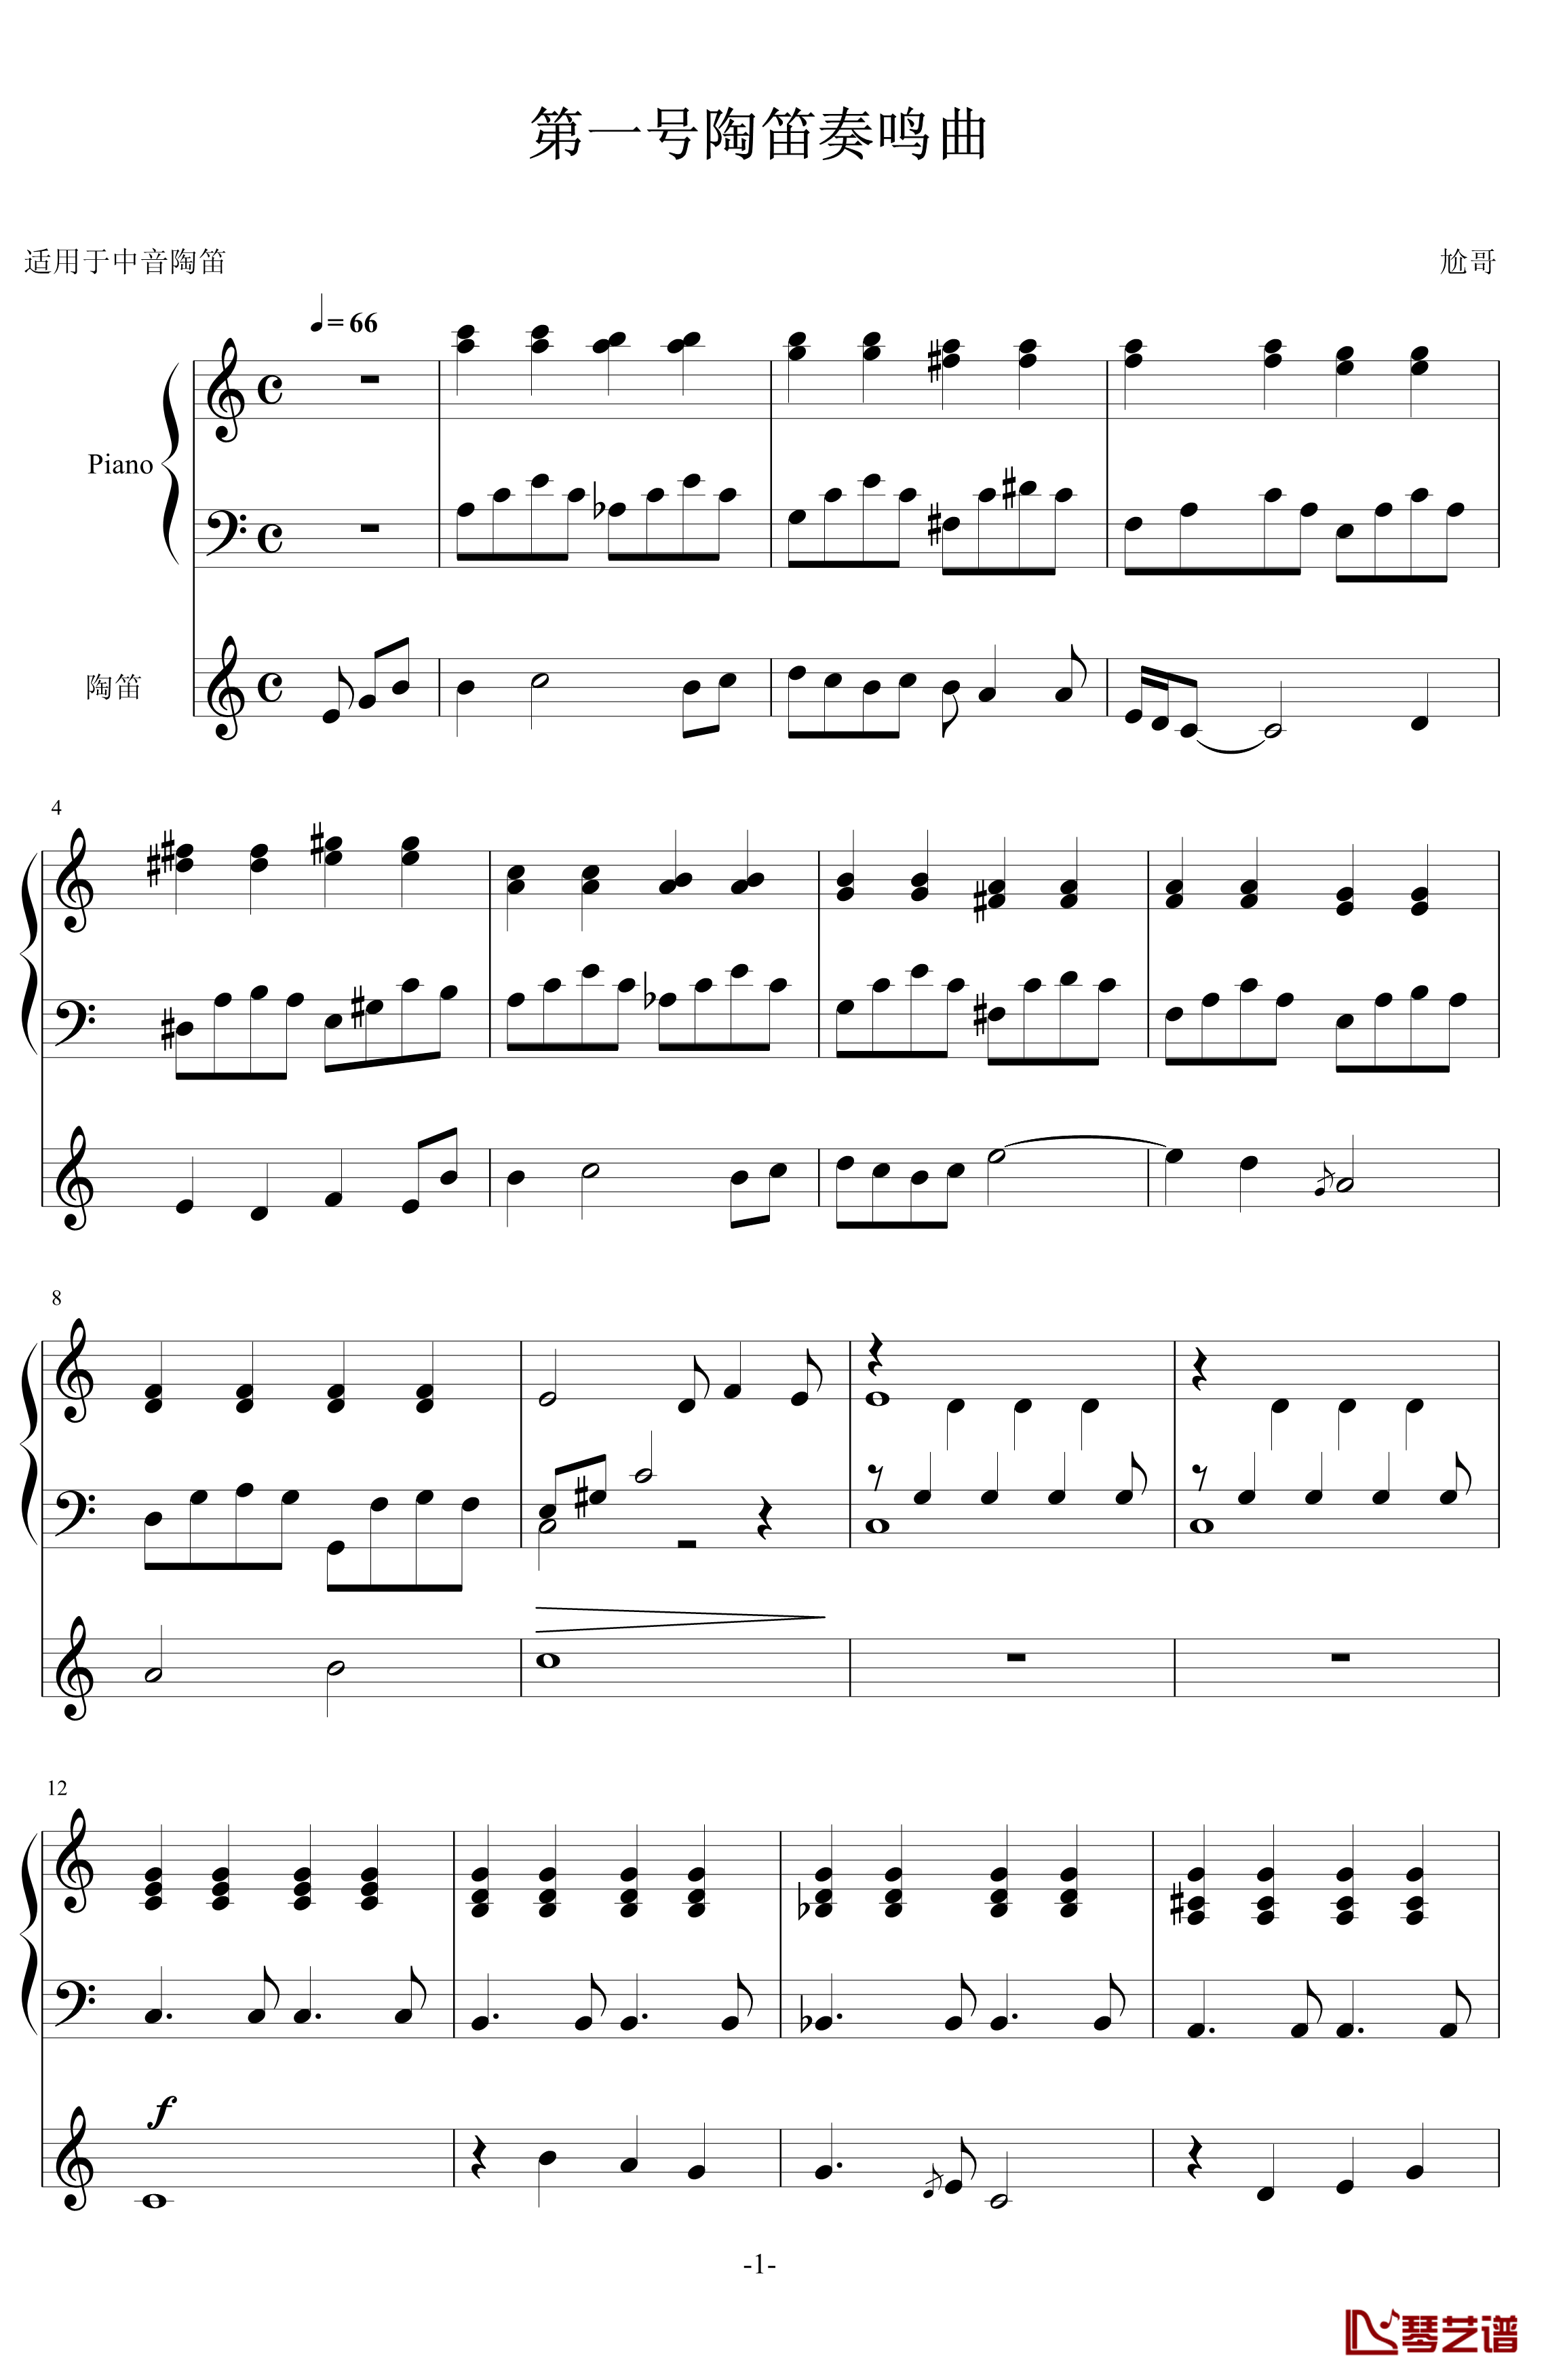 第一号陶笛奏鸣曲钢琴谱-尬哥1